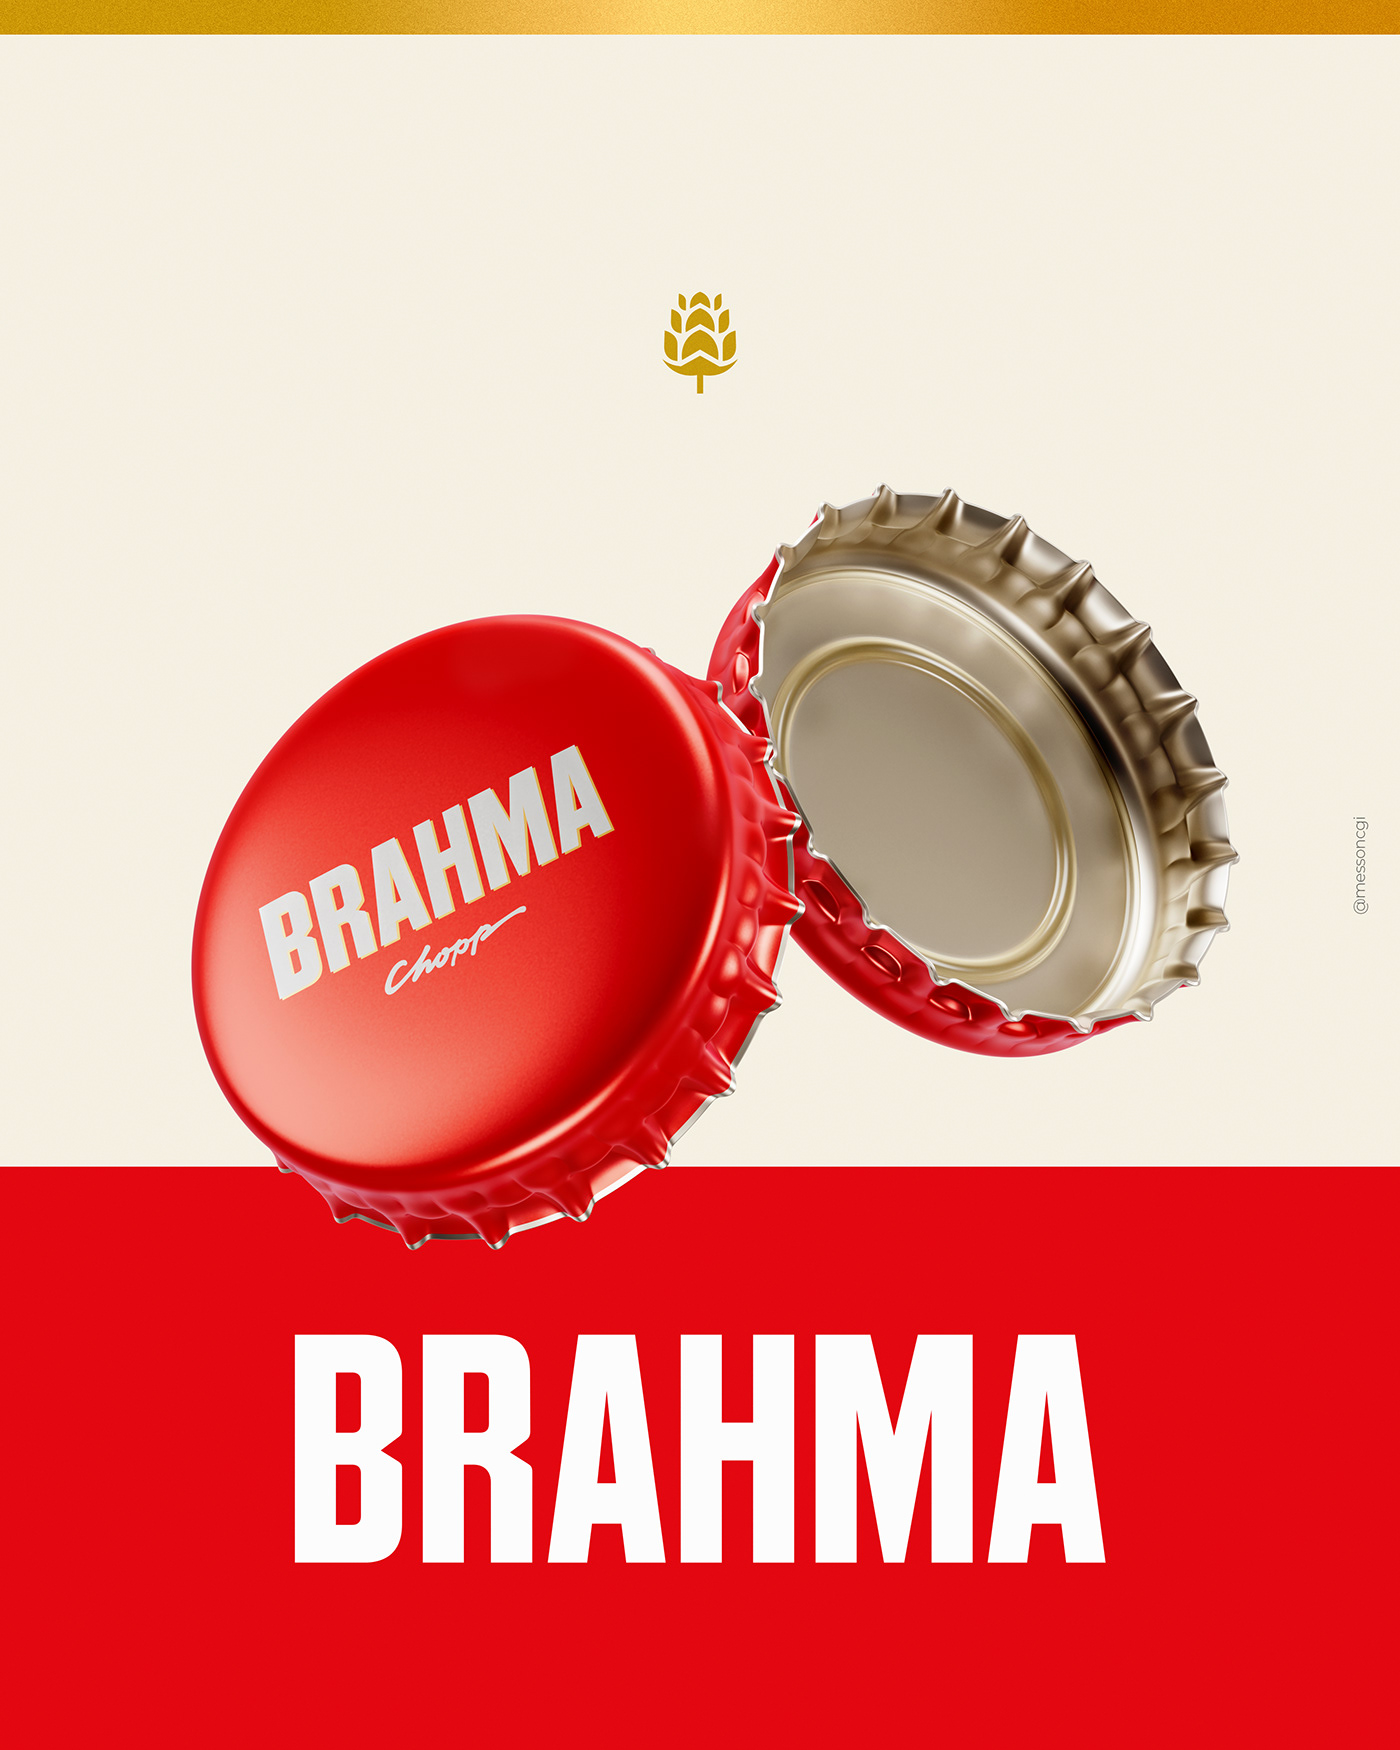 beer brahma chopp brewery ambev bière rendering beer label Social media post Advertising 